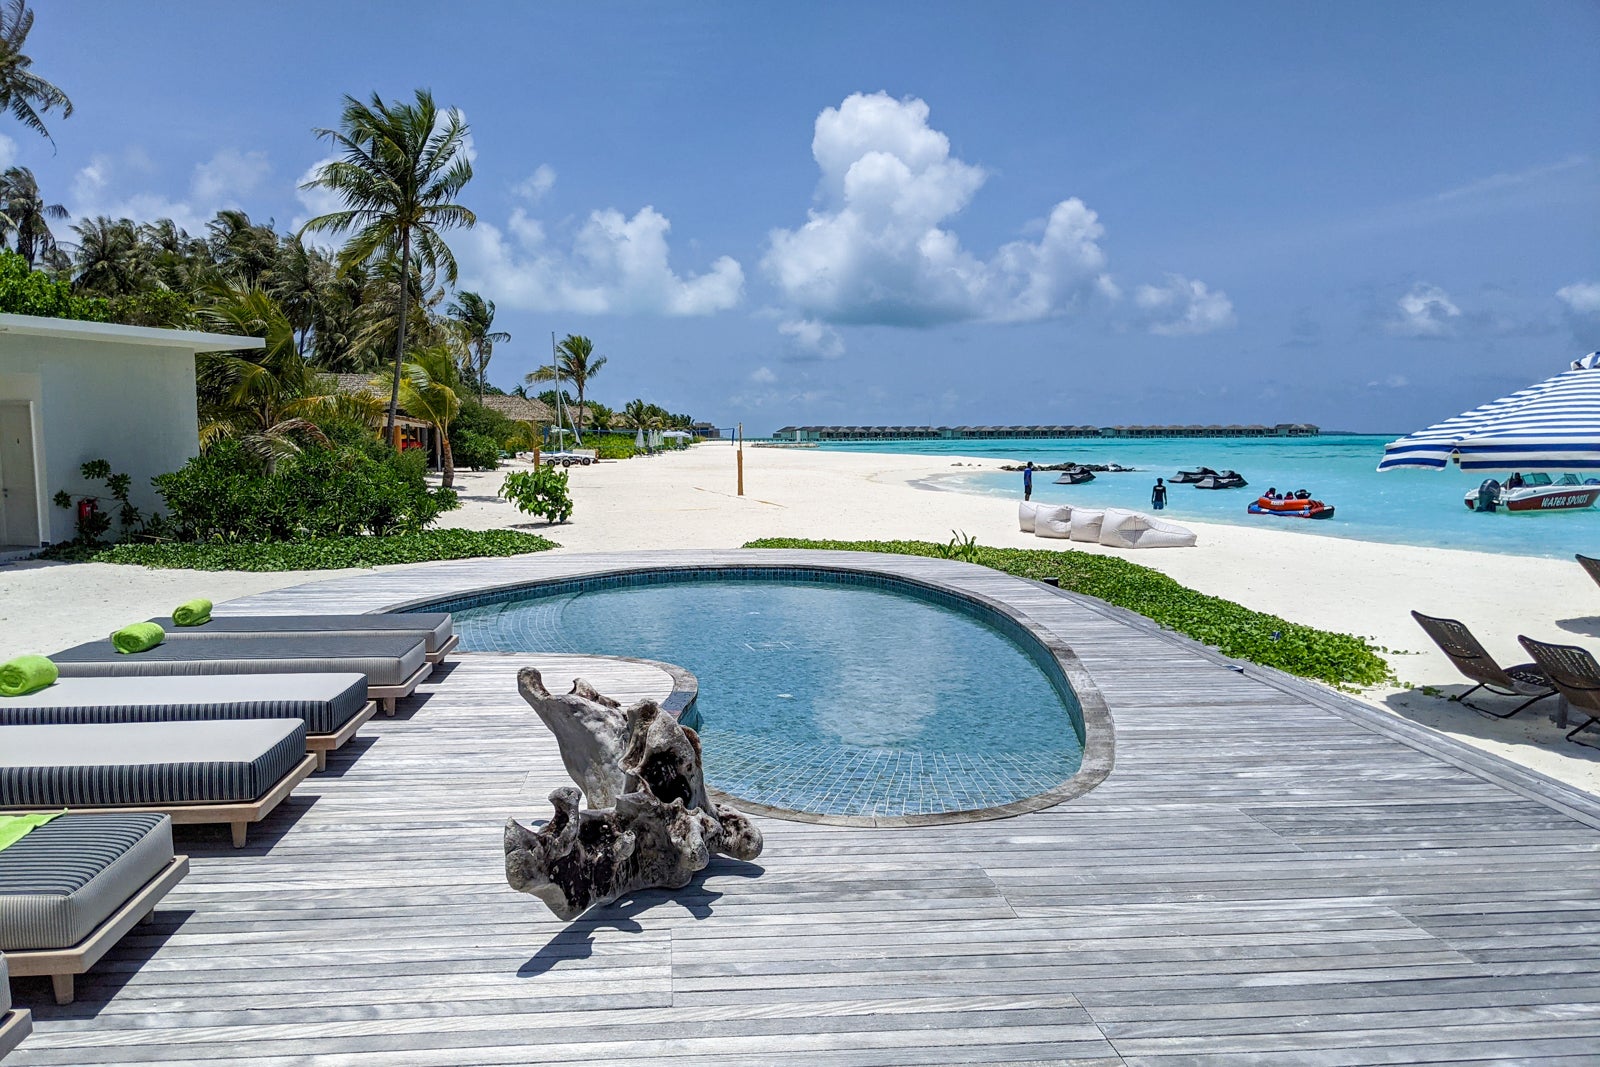 Kid's pool at Le Meridien Maldives